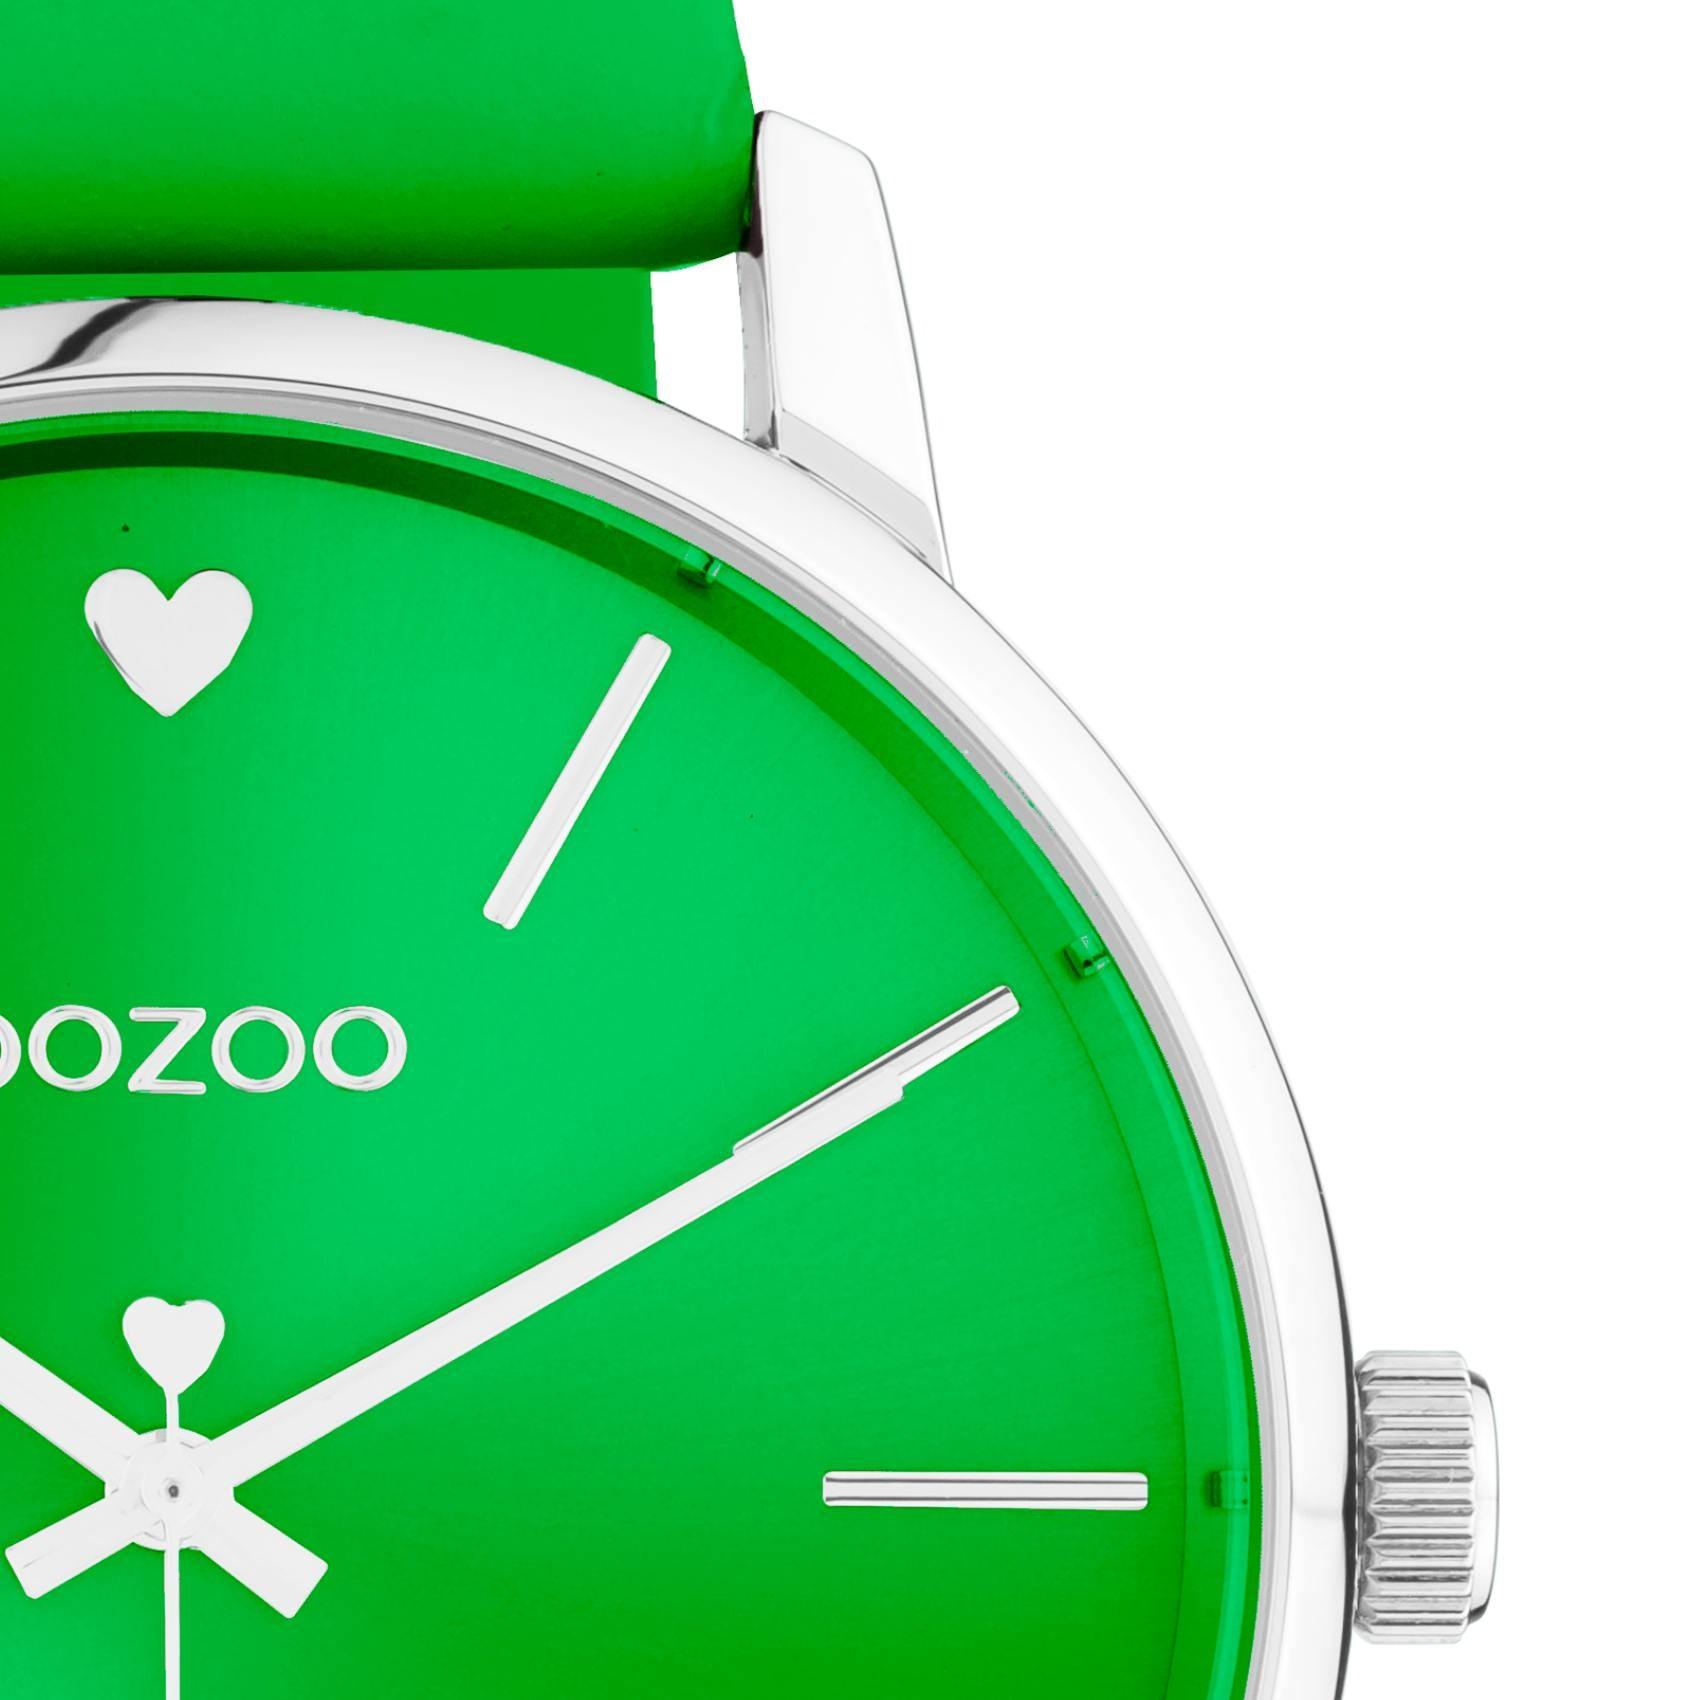 Ρολόι Oozoo C10988 με πράσινο δερμάτινο λουράκι ,πράσινο καντράν, στρογγυλό στεφάνι διαμέτρου 40mm και μηχανισμό μπαταρίας quartz.